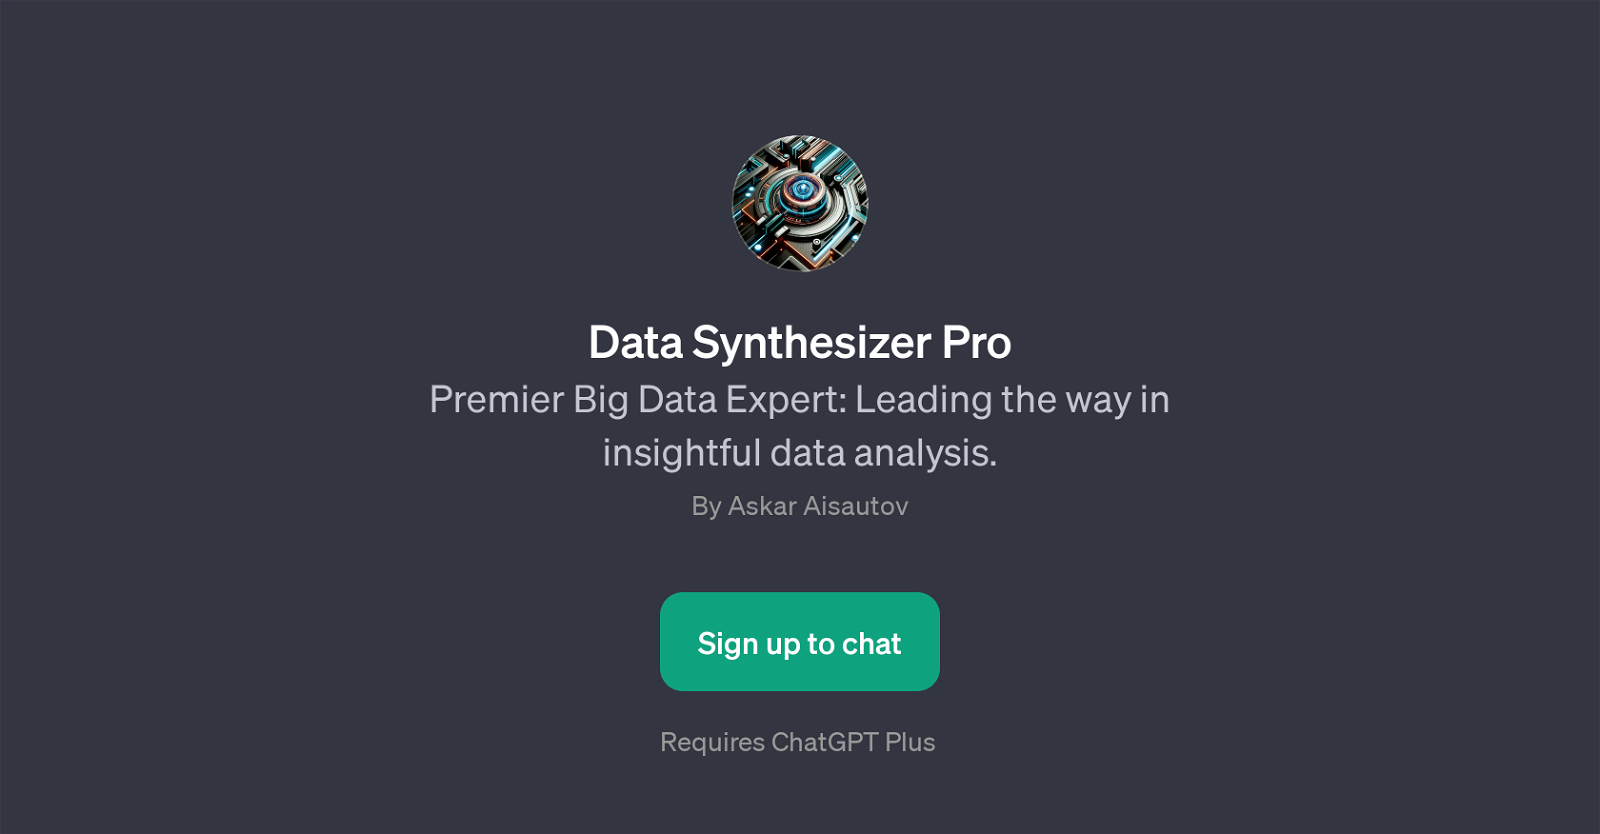 Data Synthesizer Pro website